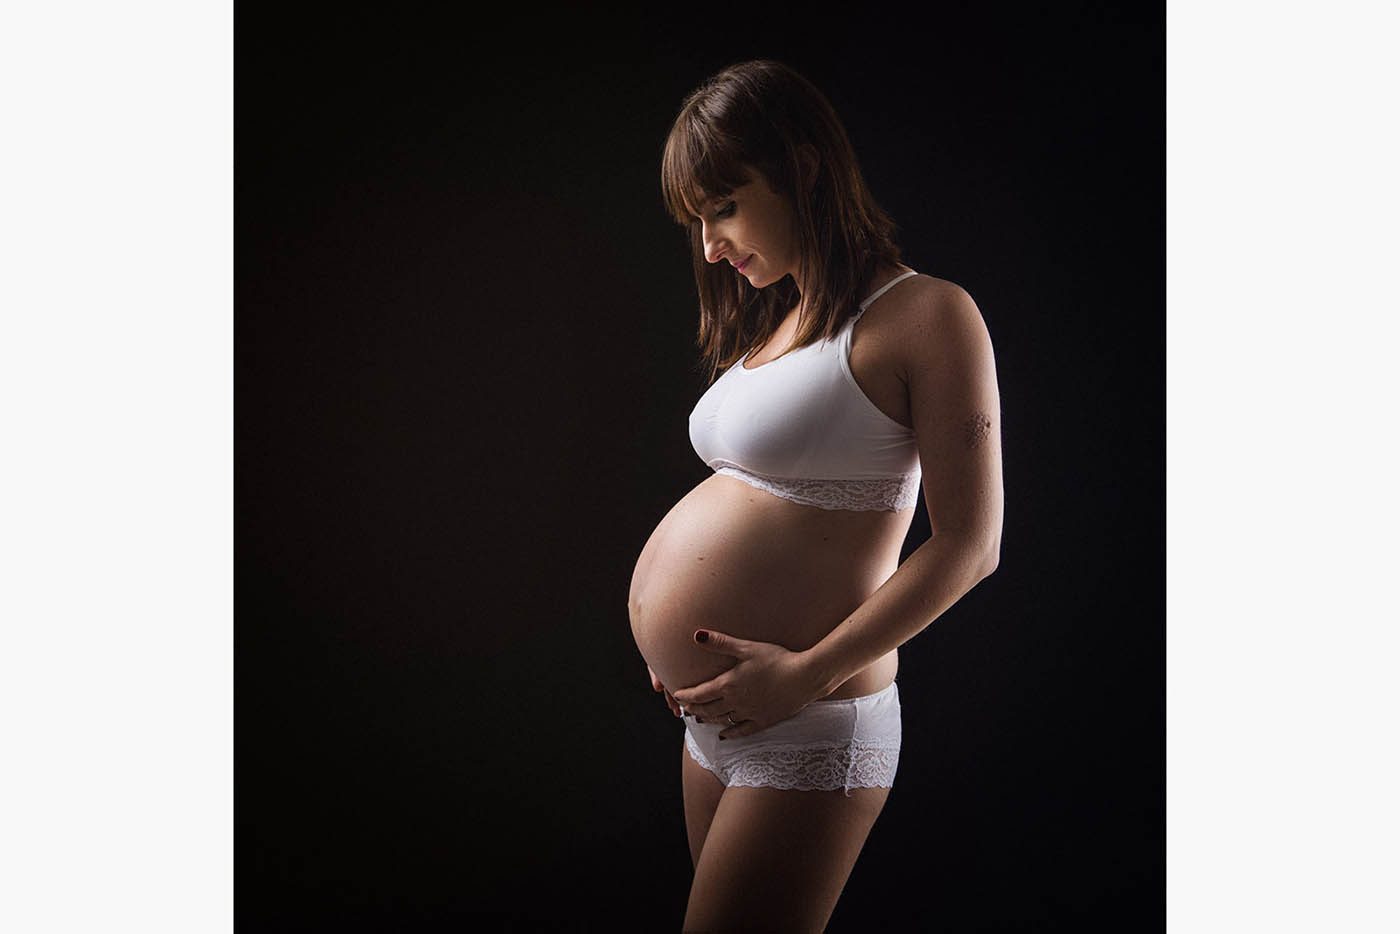 On découvre la belle silhouette de cette future maman qui pose en regadant tendrement son ventre arrondi